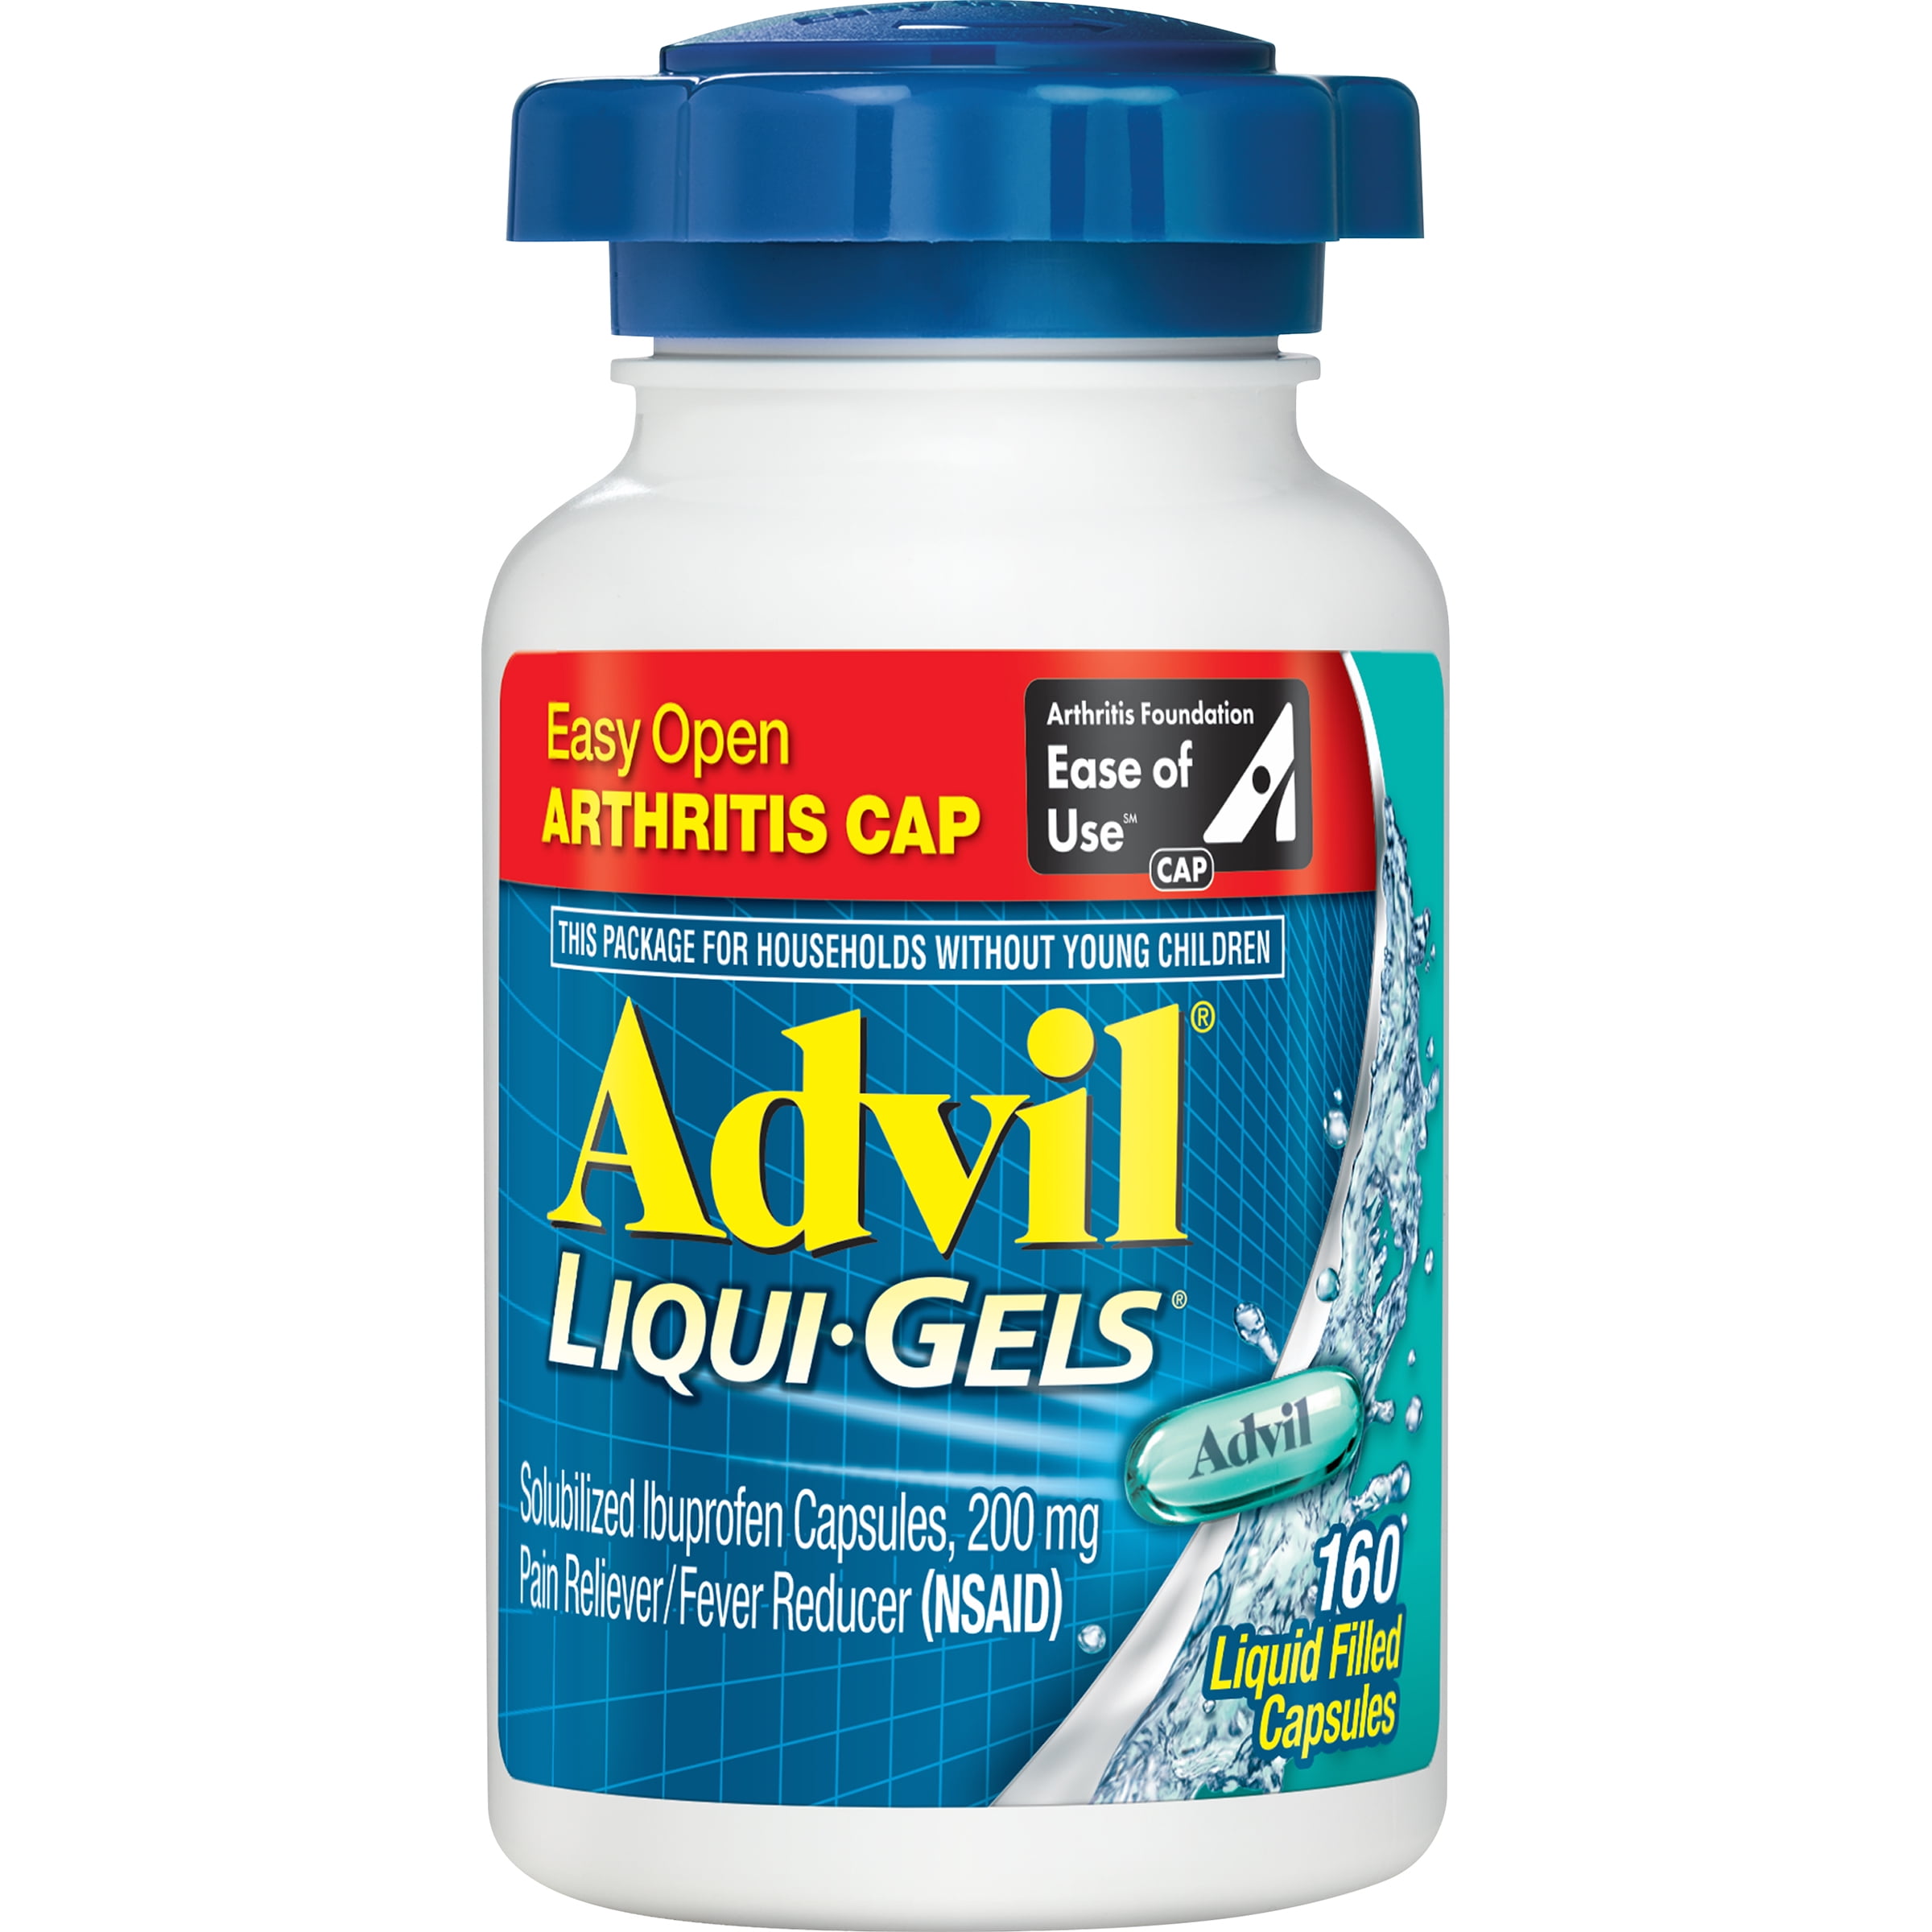 Advil Liqui-Gels. Advil 600 для суставов. Liqui gels